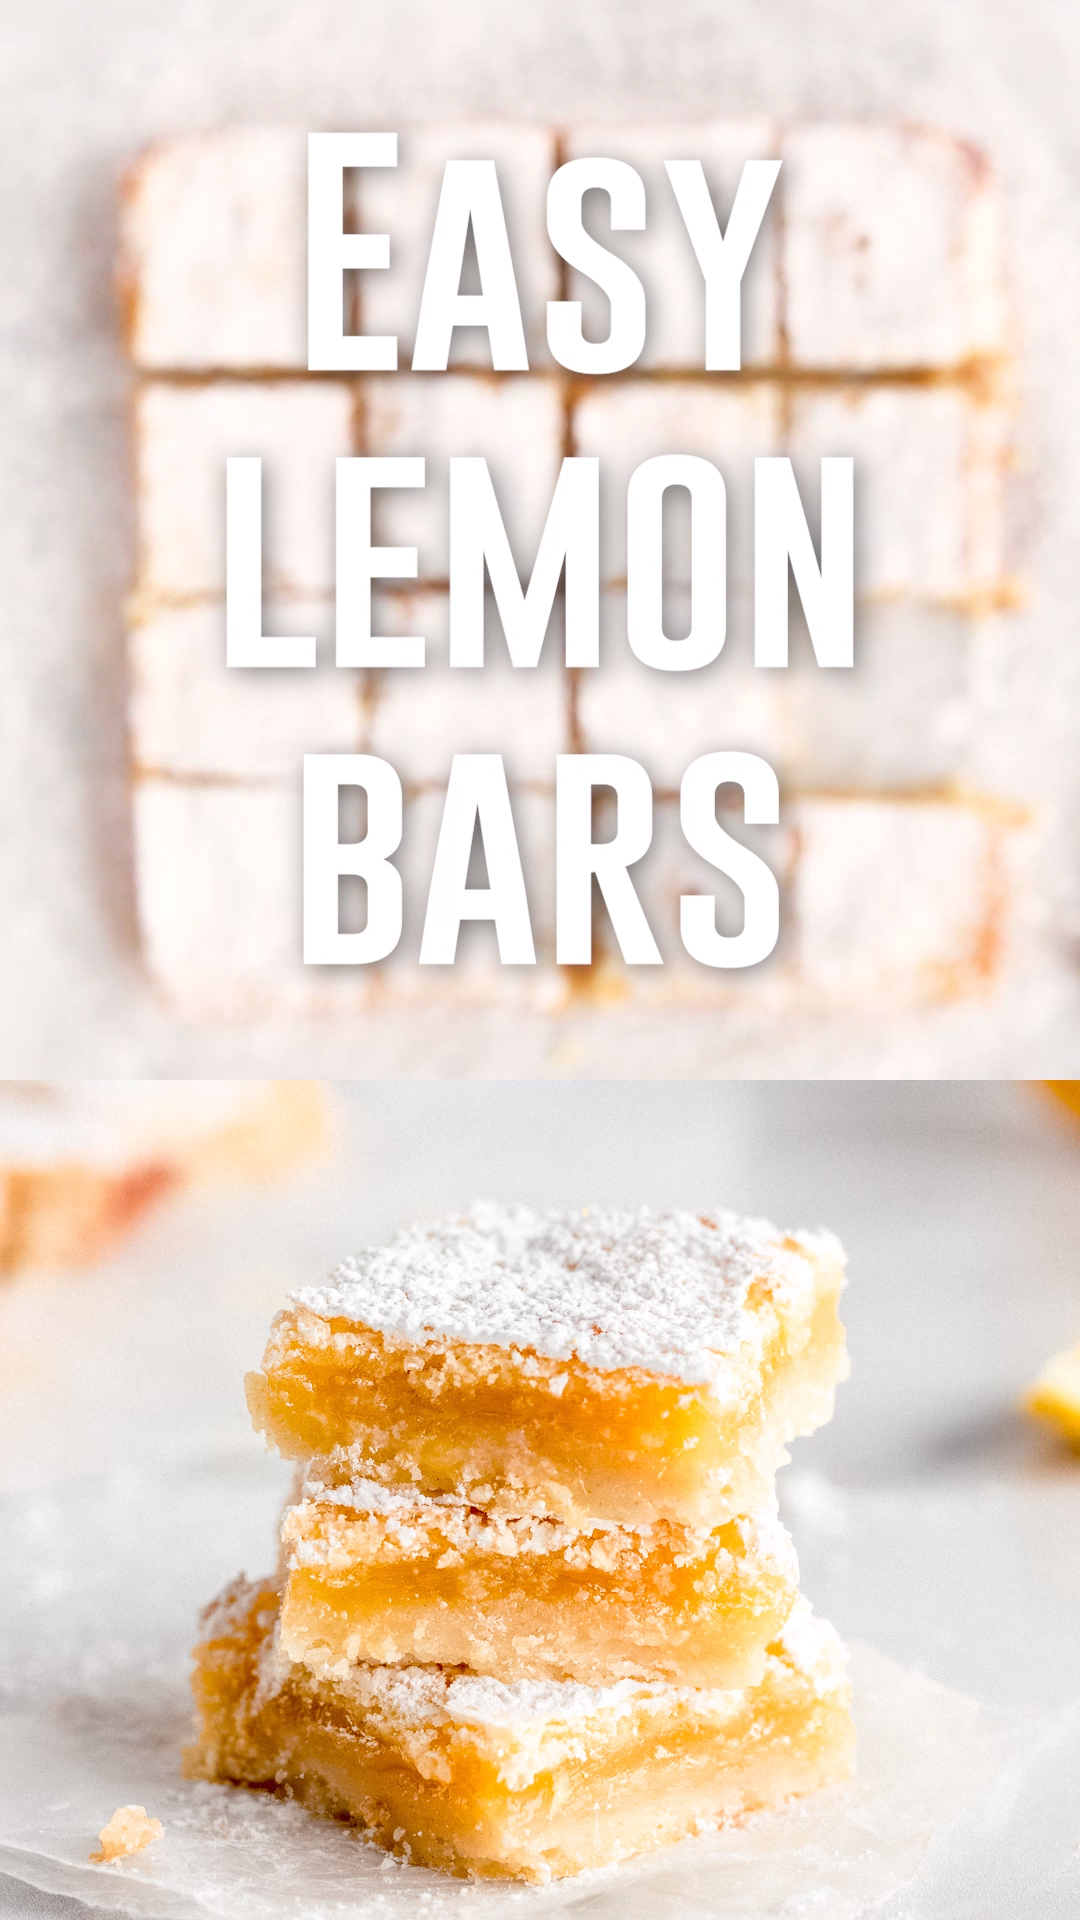 Easy Lemon Bars -   18 winter desserts Bars ideas